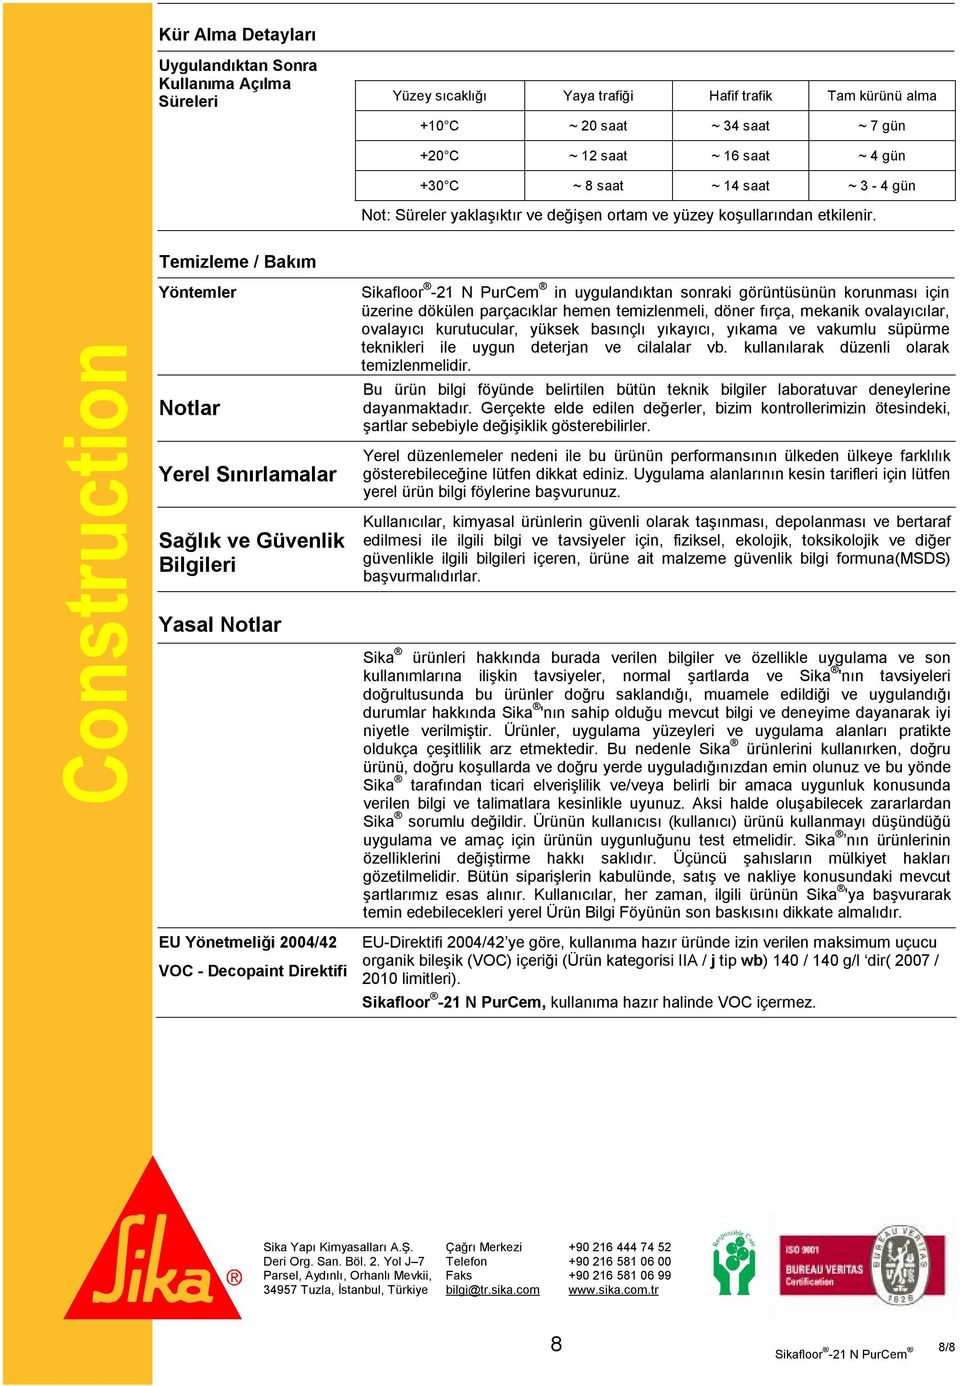 Construction Temizleme / Bakım Yöntemler Notlar Yerel Sınırlamalar Sağlık ve Güvenlik Bilgileri Yasal Notlar EU Yönetmeliği 2004/42 VOC - Decopaint Direktifi in uygulandıktan sonraki görüntüsünün